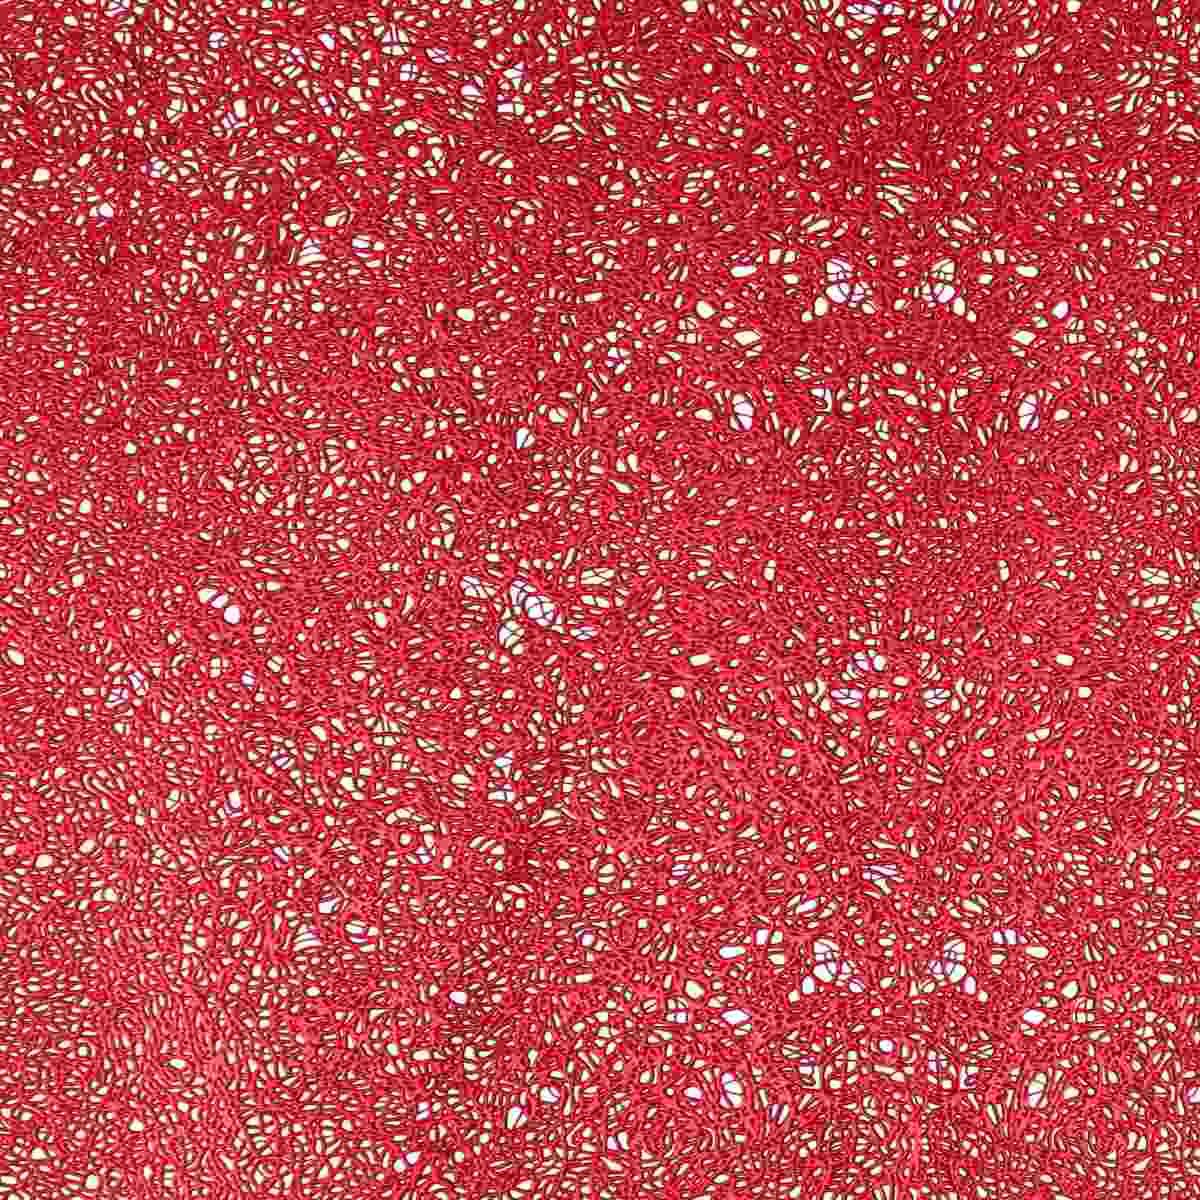 Runner Rettangolare Plastica Rosso cm.33x155